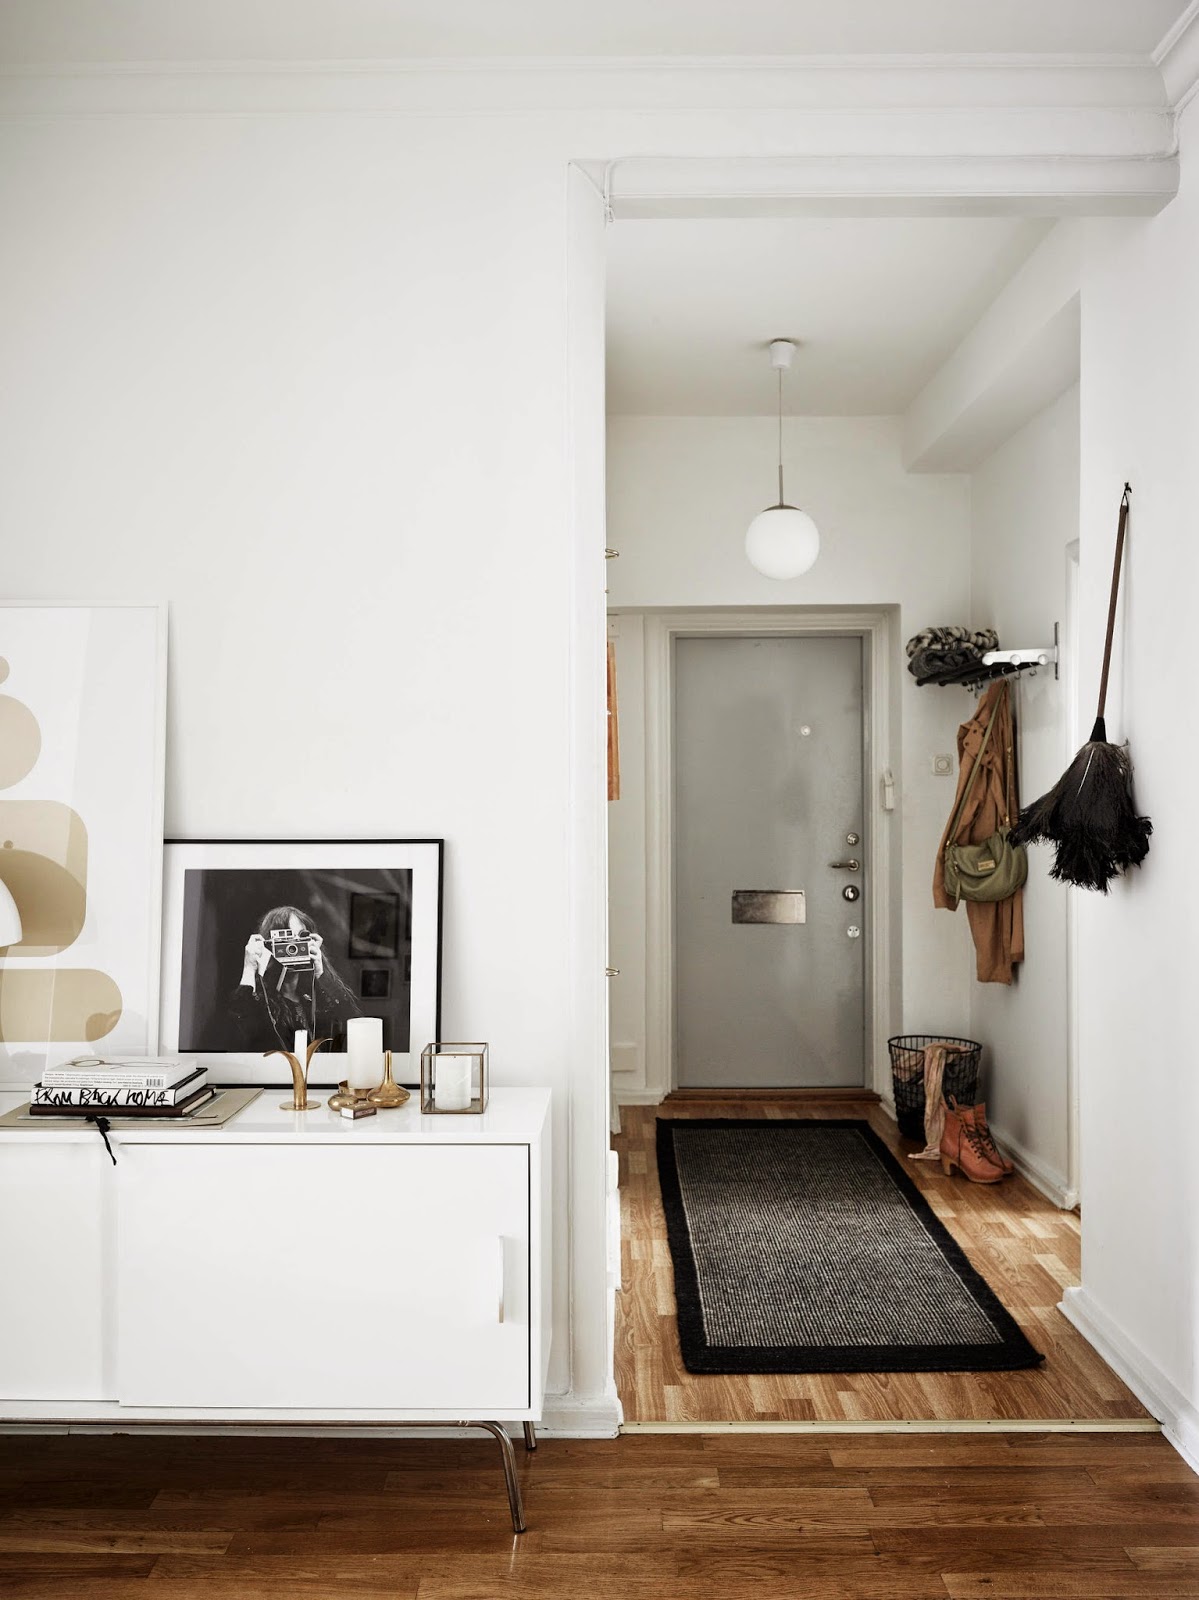 Apartamento funcional decorado con estilo nórdico